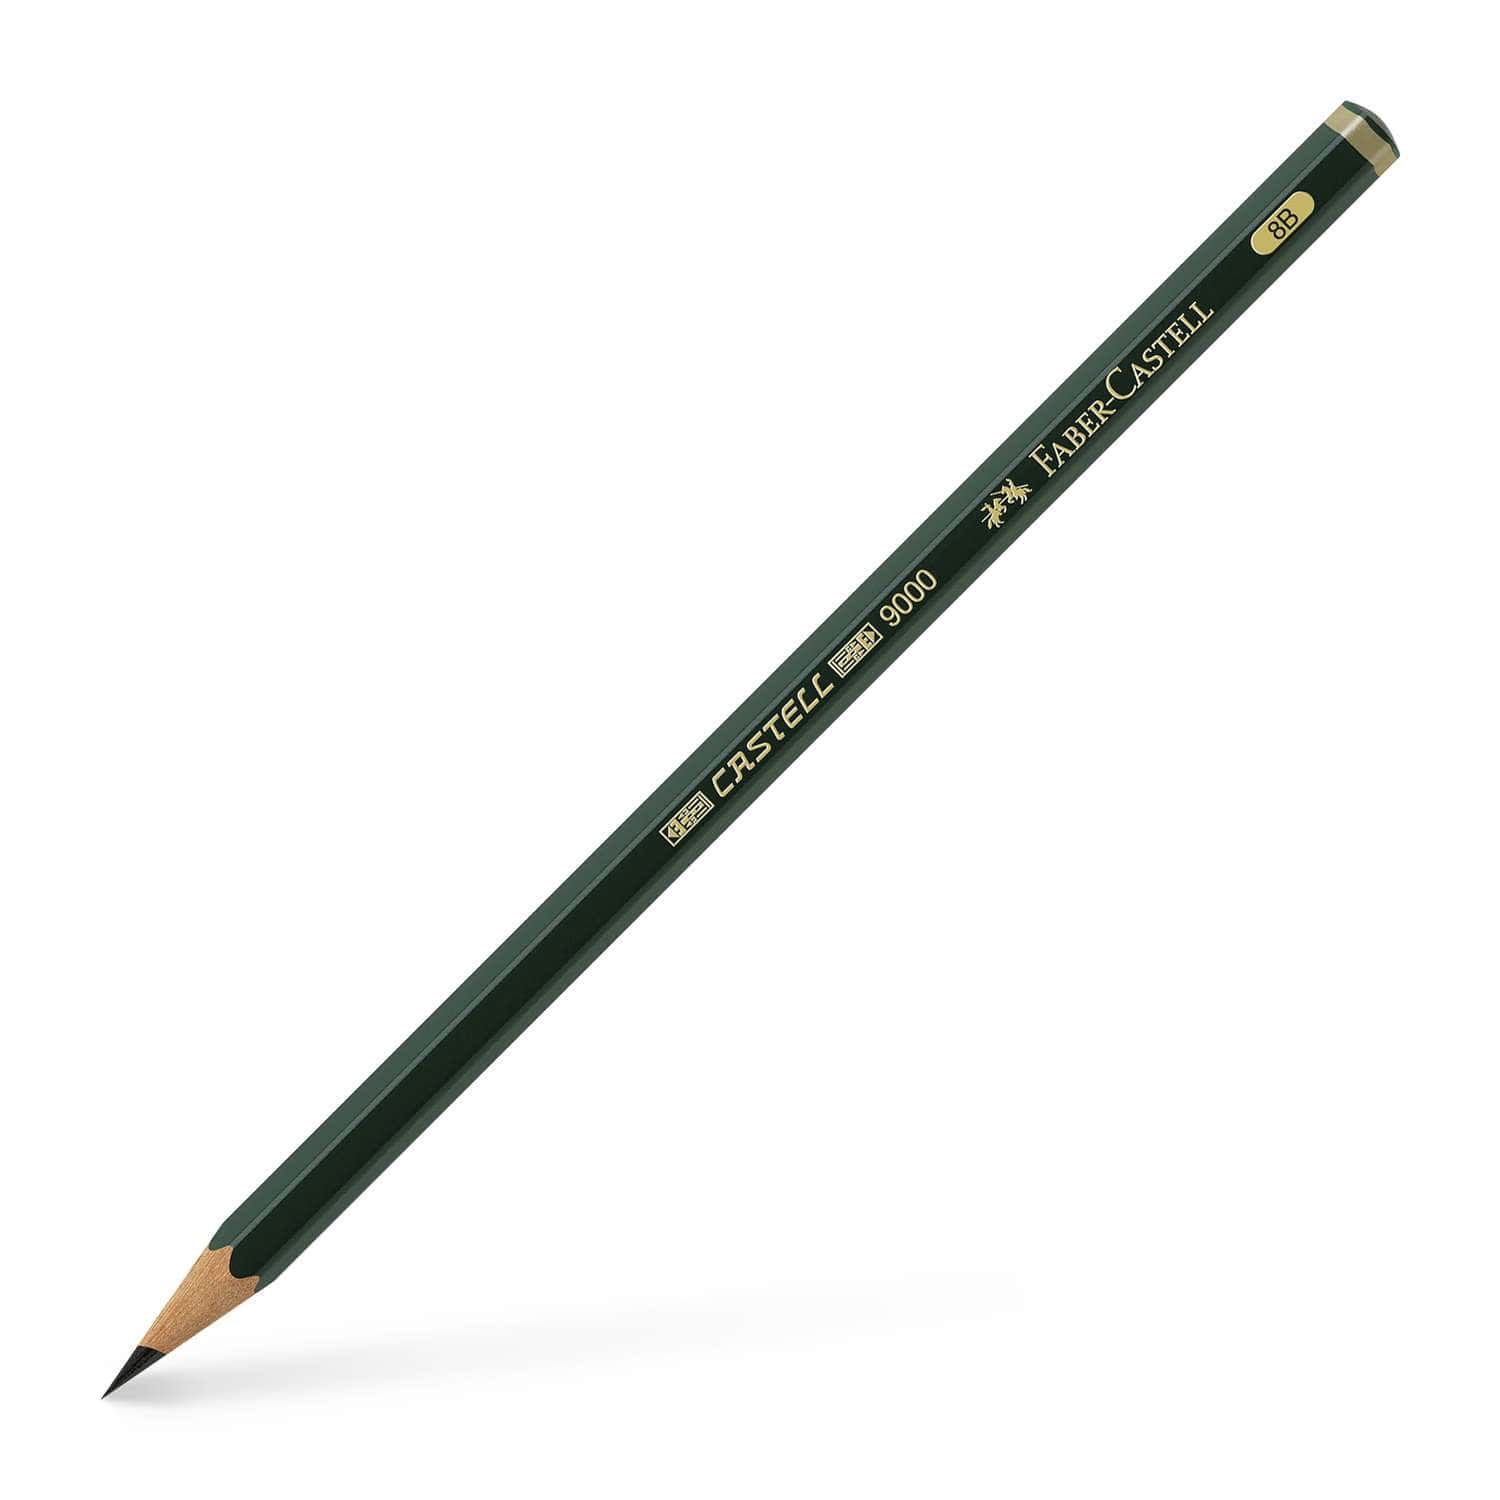 Faber-Castell Castell 9000 confezione 12 matite di grafite, matite